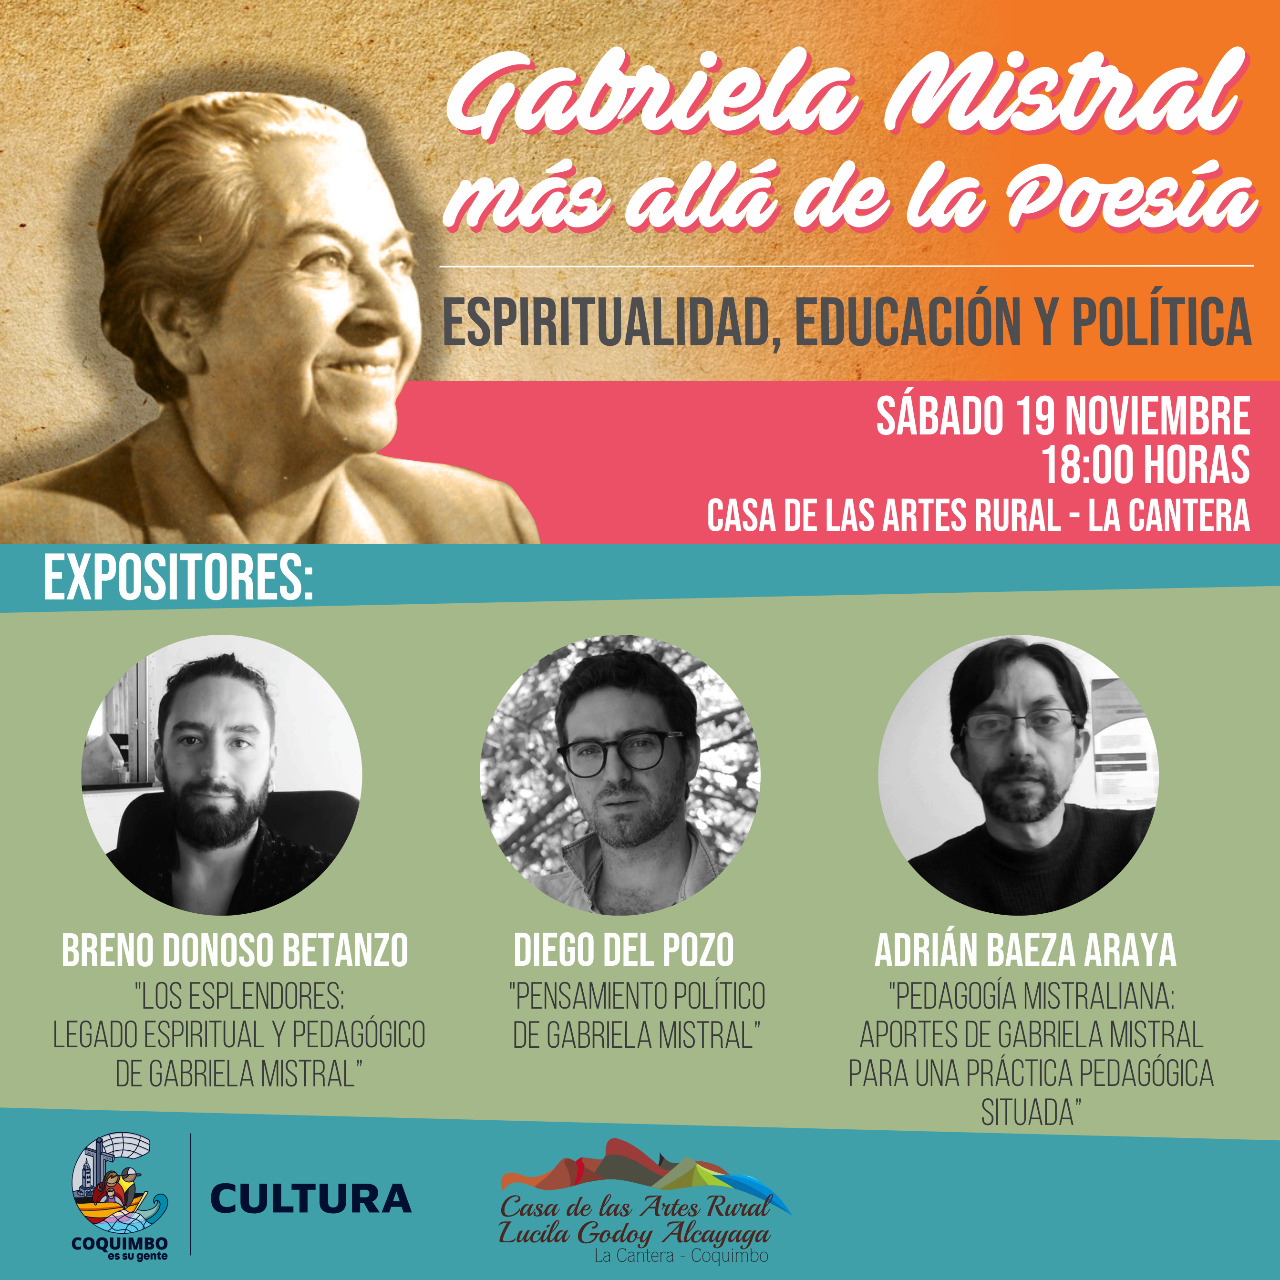 Seminario «Gabriela Mistral más allá de la Poesía: Espiritualidad, Educación y Política» se desarrollará este sábado